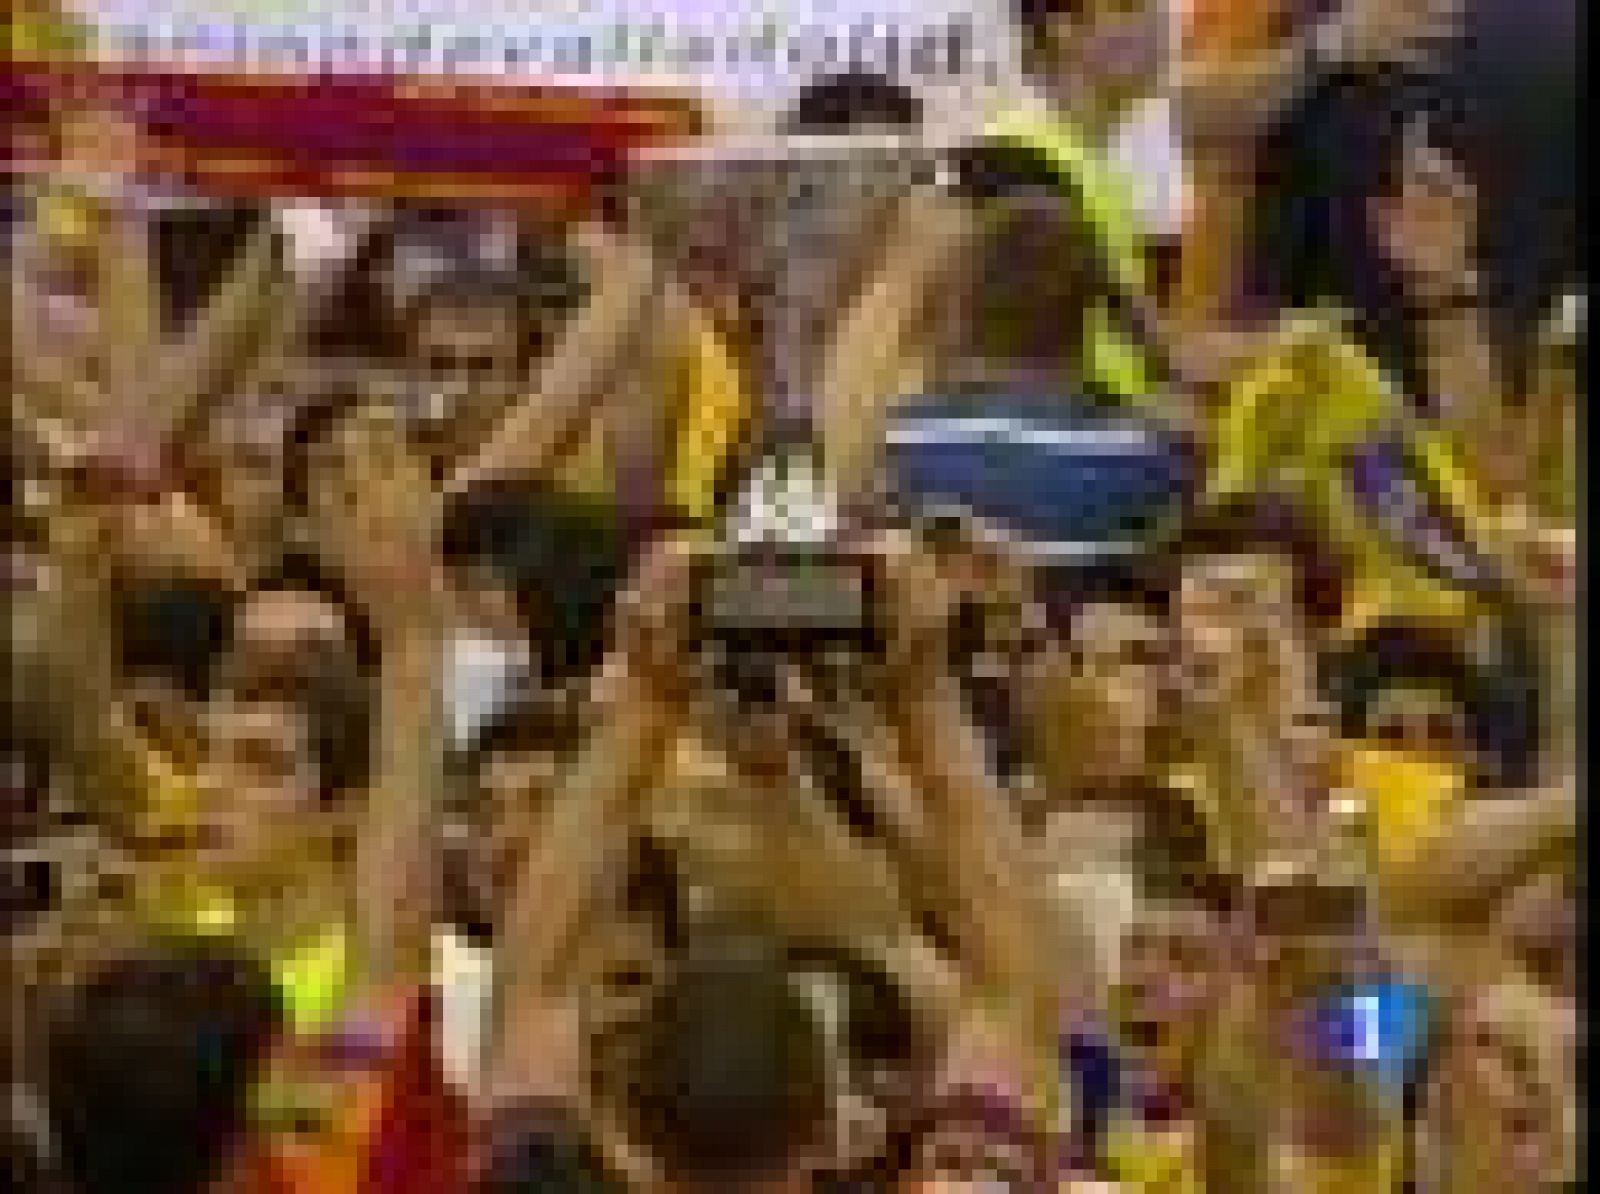  El BM Valladolid gana su primer título europeo, la Recopa de Europa.